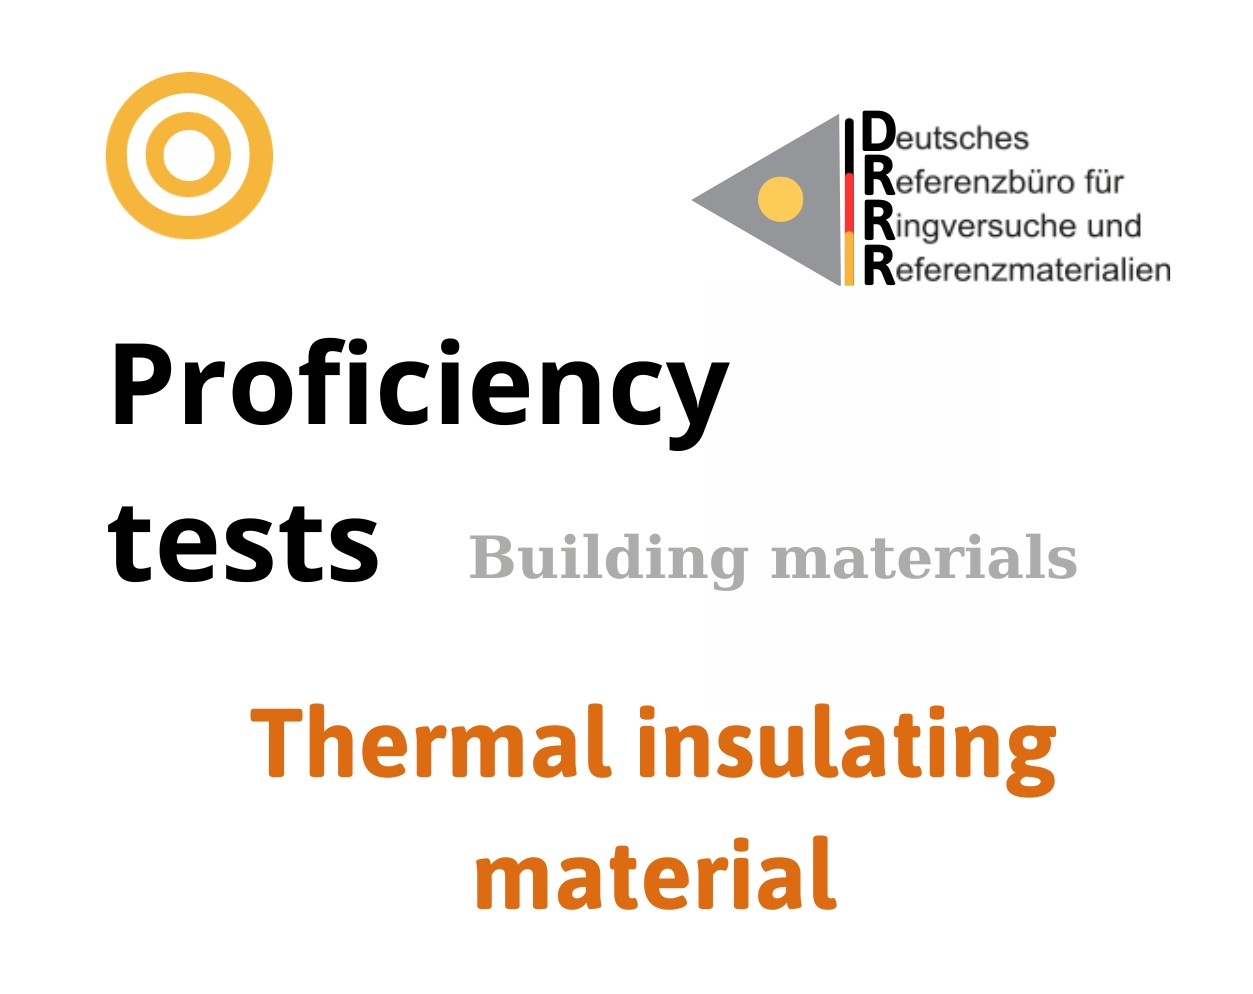 Thử nghiệm thành thạo (ISO 17043) các thông số của vật liệu cách nhiệt (Thermal insulating material), Hãng DRRR, Đức